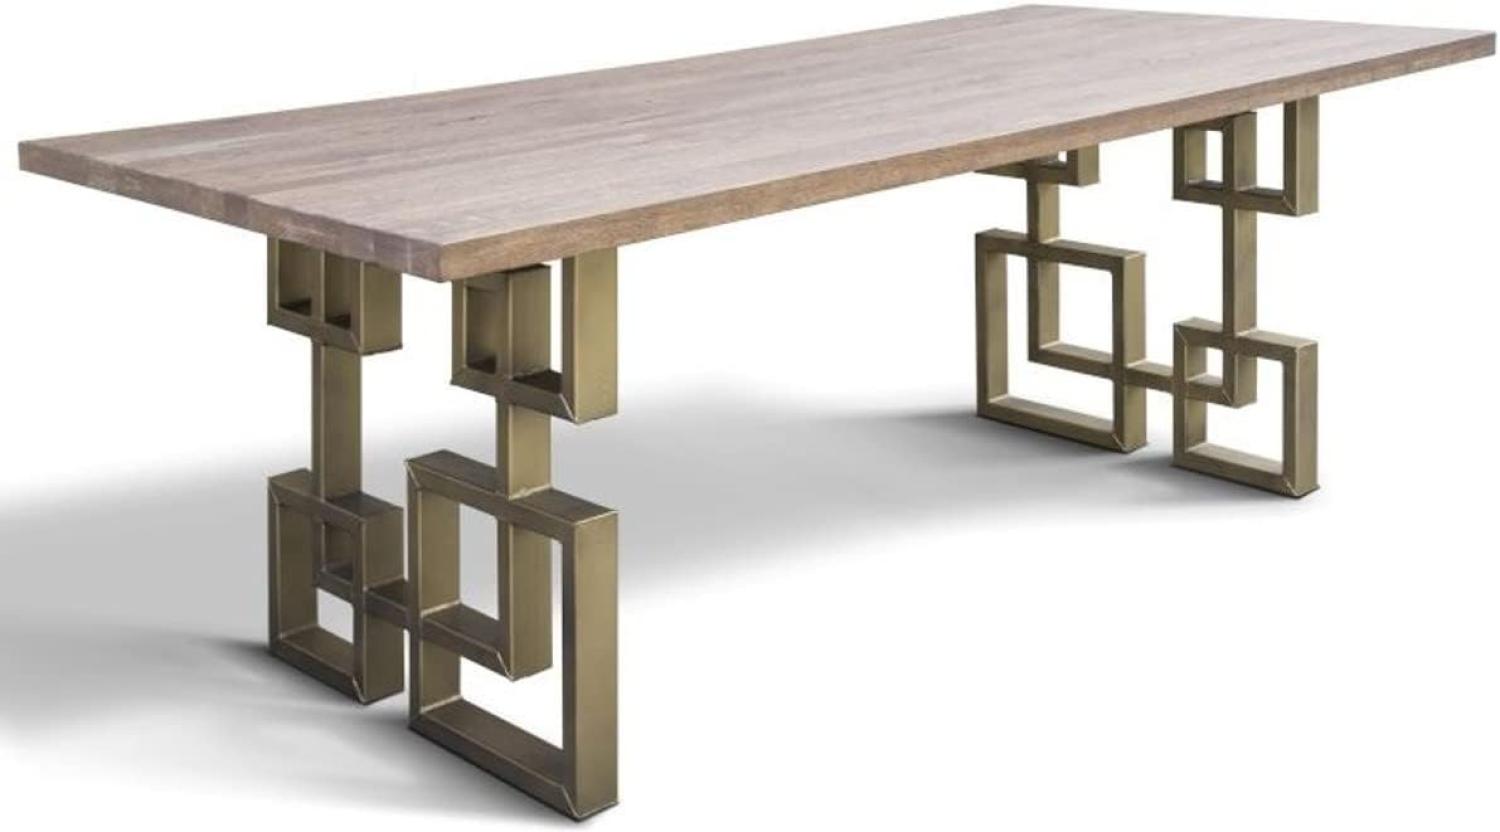 Casa Padrino Designer Massivholz Esstisch mit rustikaler Eichenholz Tischplatte und Stahl Beinen - Verschiedene Farben & Größen - Esszimmer Tisch Bild 1